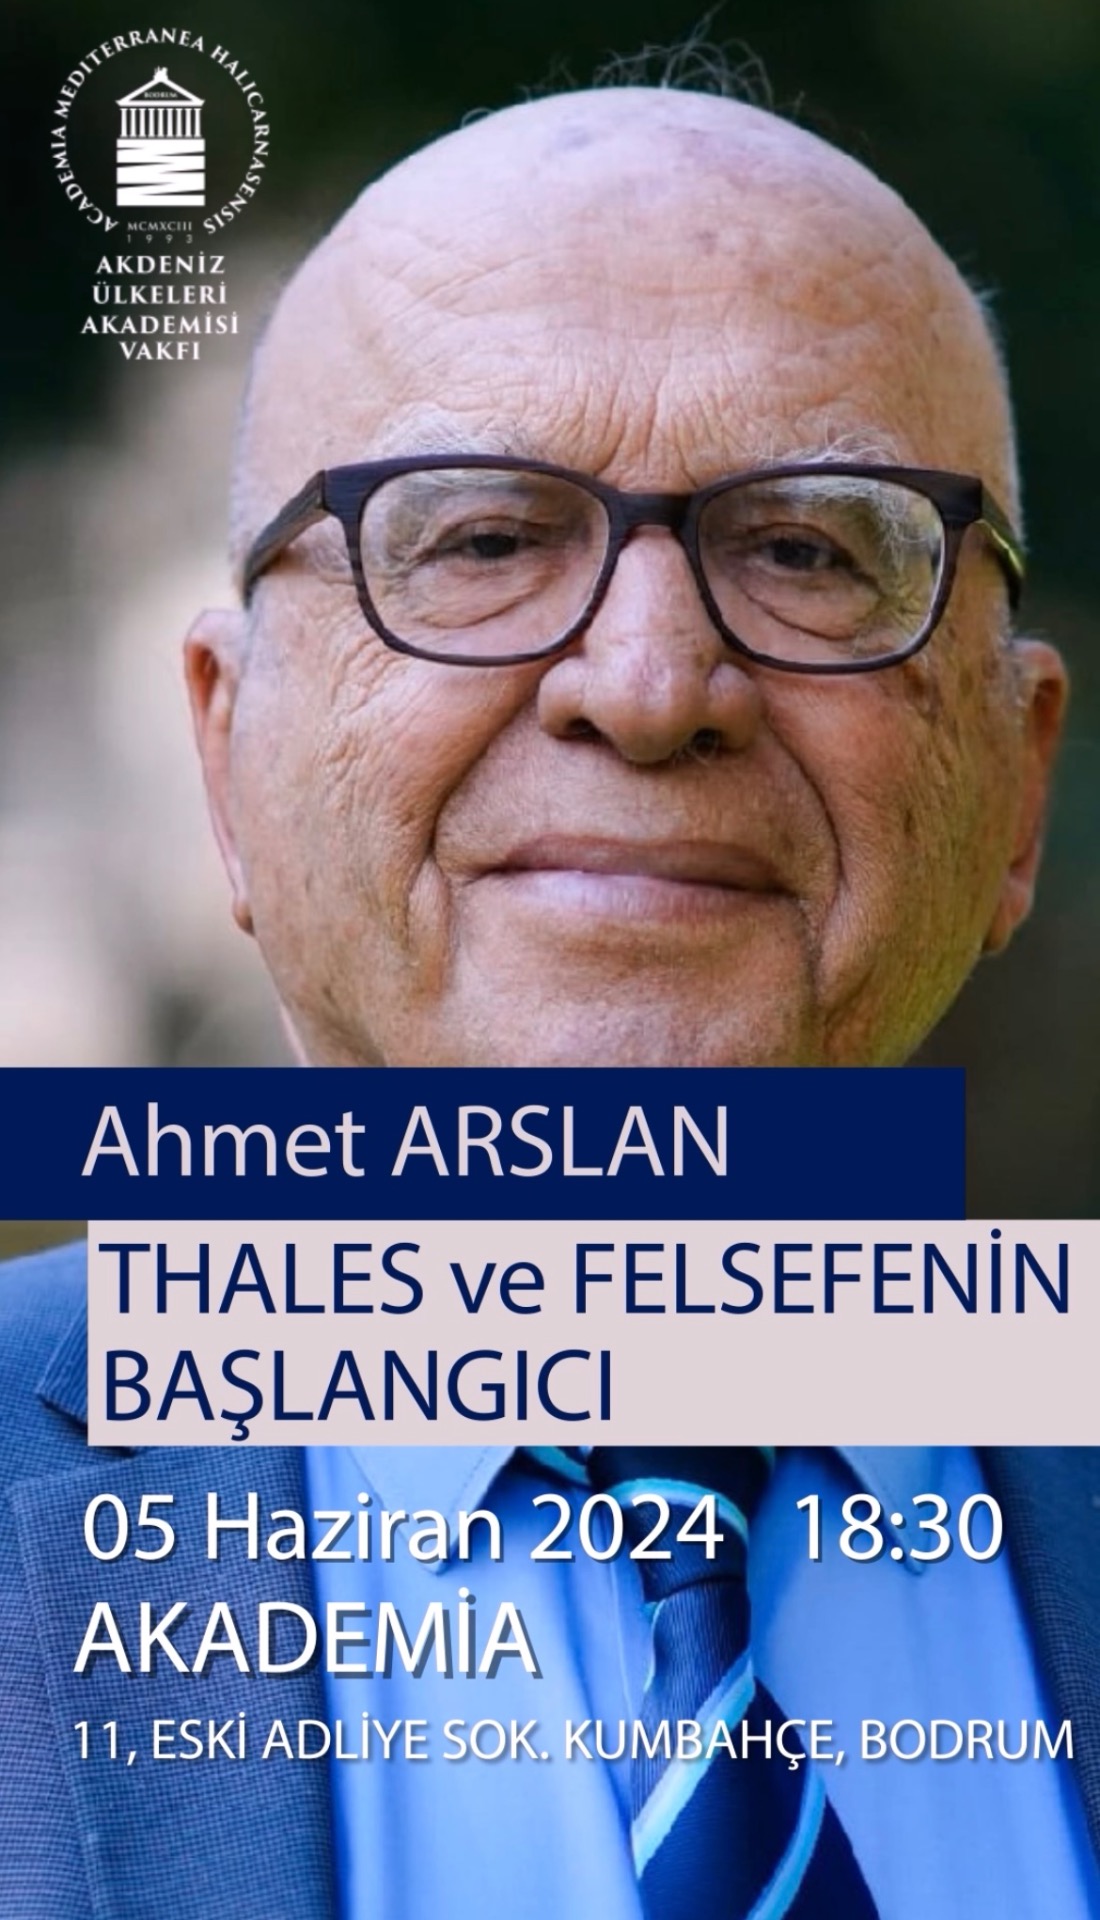 Ahmet Arslan’la Felsefenin Başlangıcına Yolculuk Akademia Bahçesinde